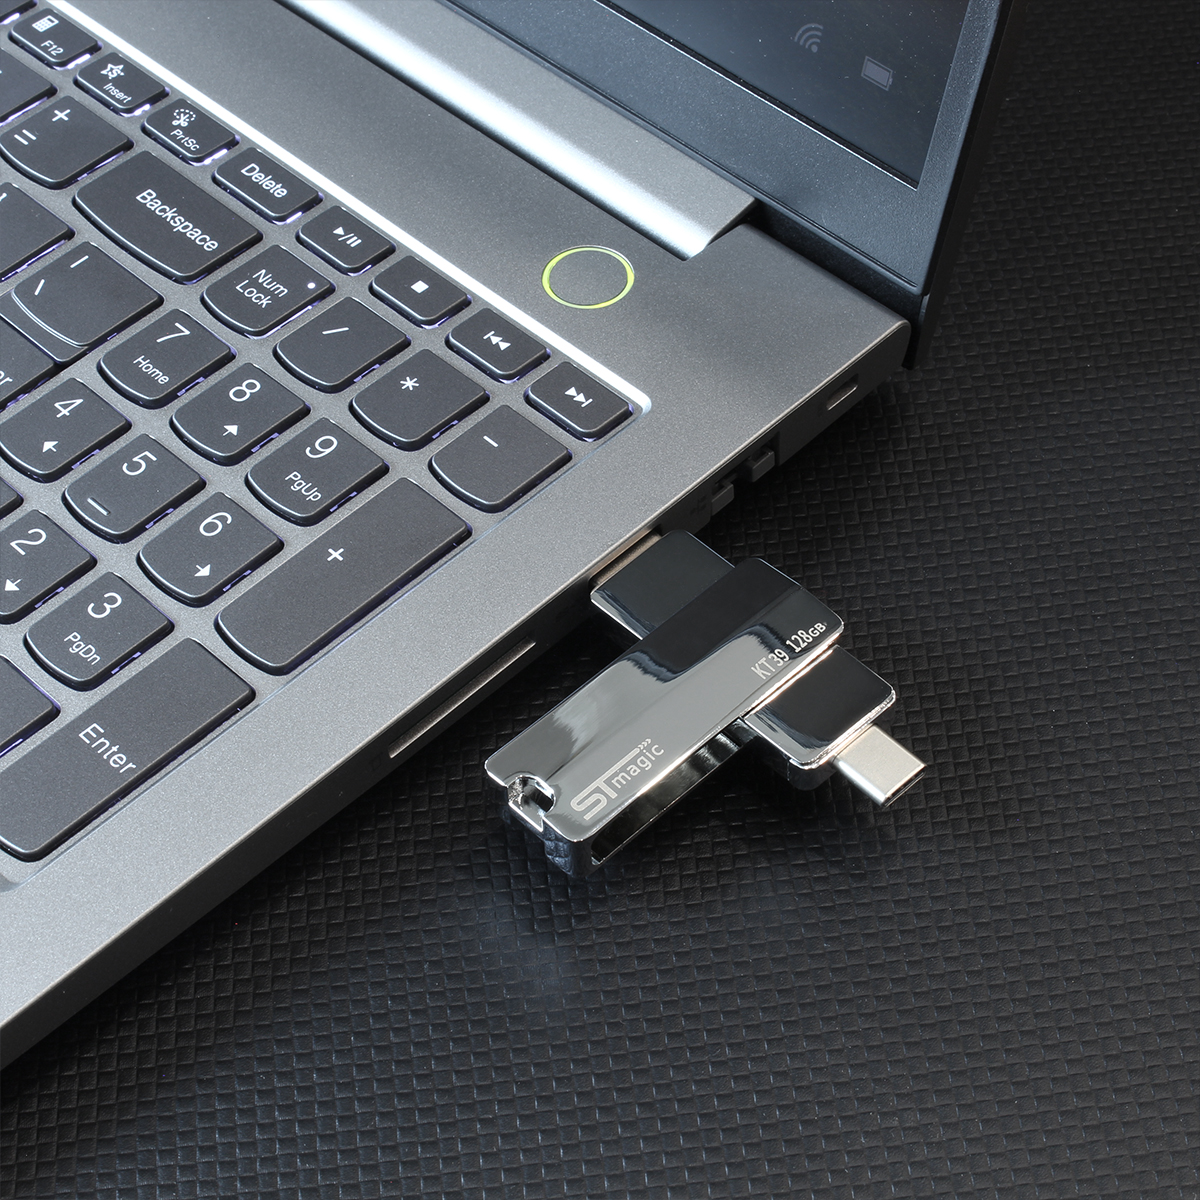 STmagic K39 2 in 1 USB 3.0 &Type-C USB Flash Drive OTG Pendrive Metal 64GB 128GB 256GB 512GB Memory U Disk 150MB/S